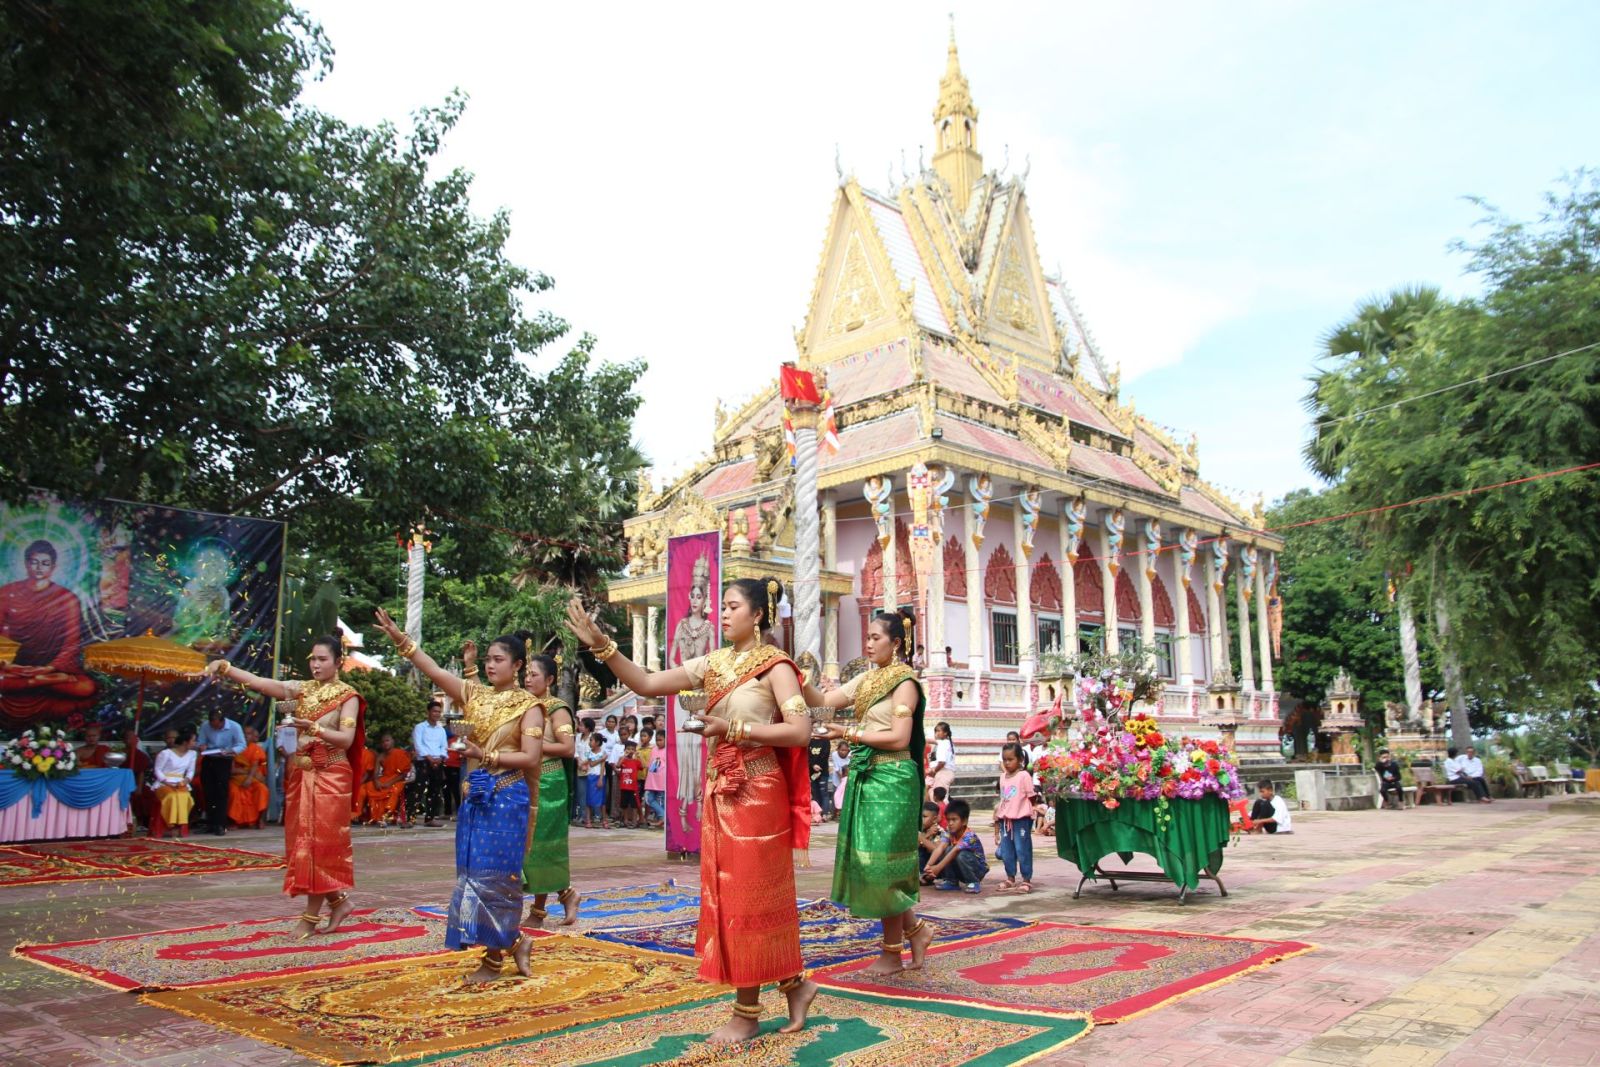 Tây Ninh đa dạng cộng đồng dân tộc sinh sống